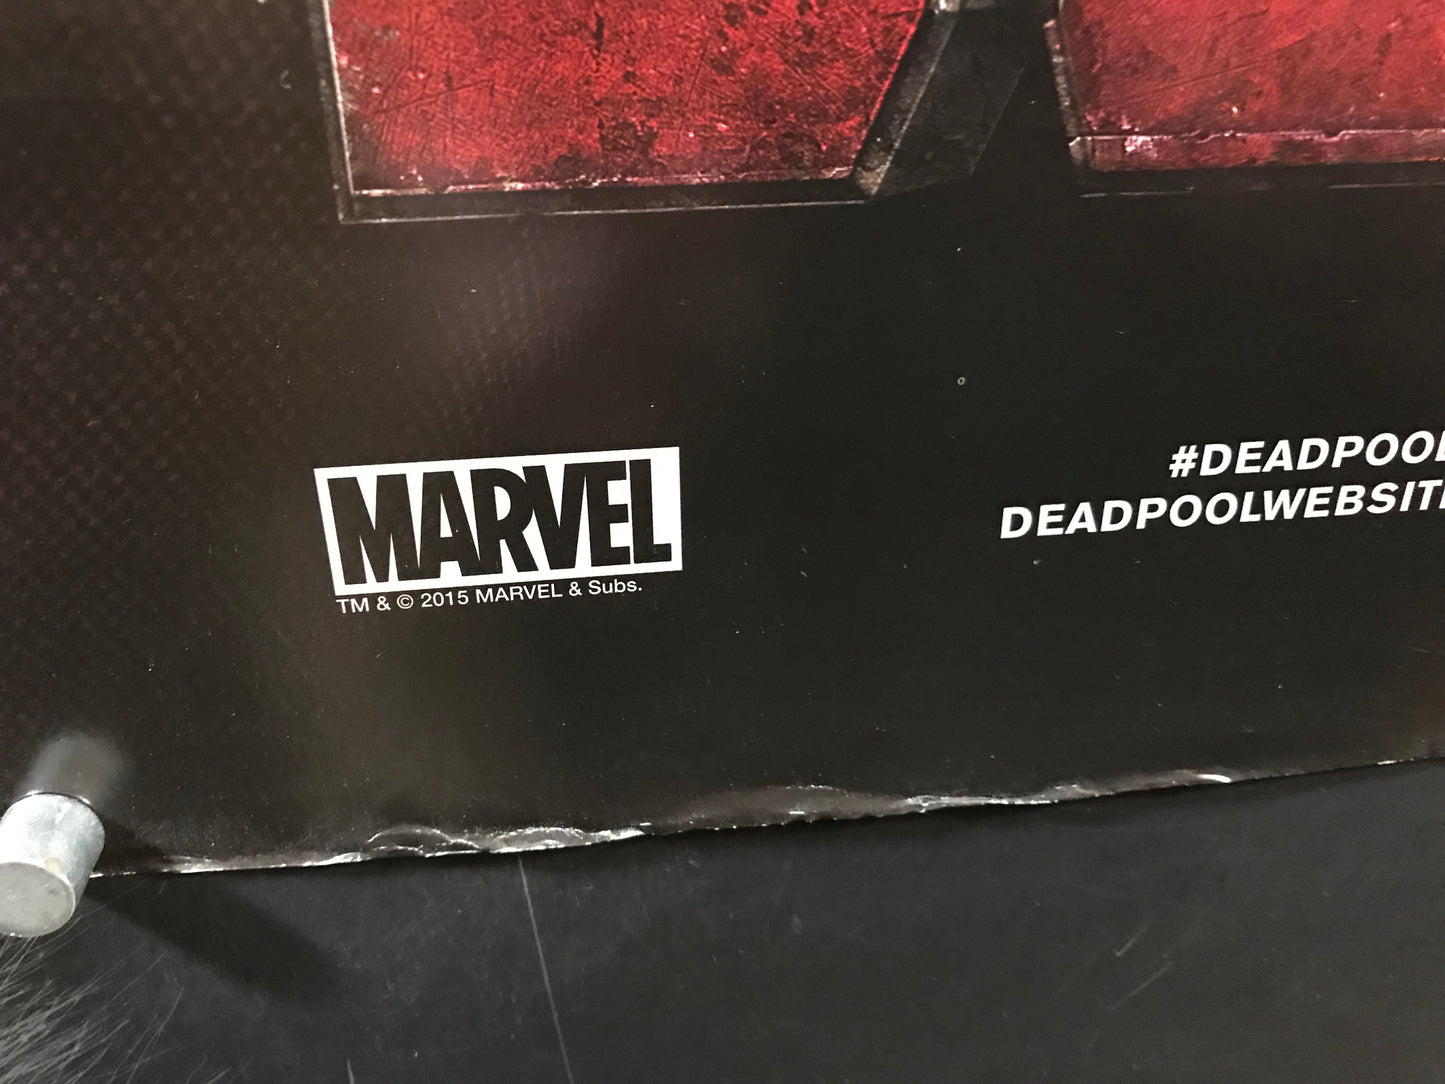 Deadpool Original One Sheet Style "B" Teaser Poster 2016